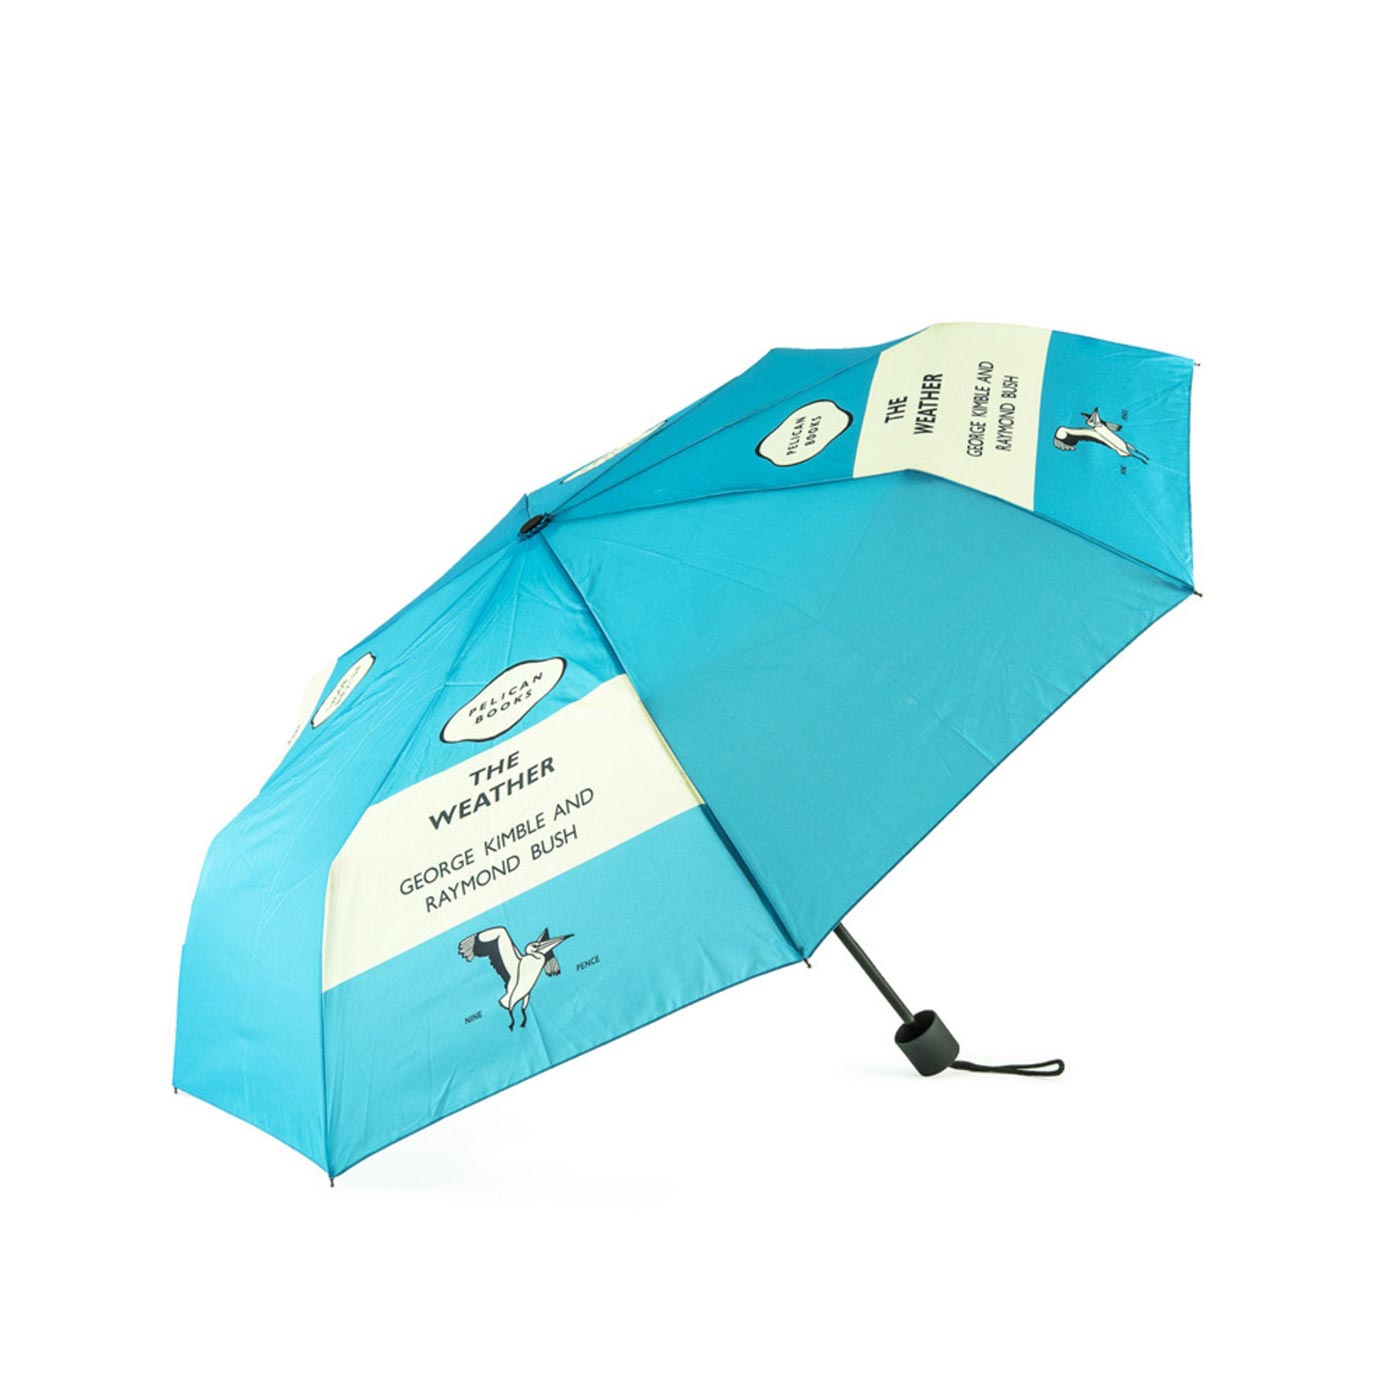 Umbrella - The Weather - Penguin